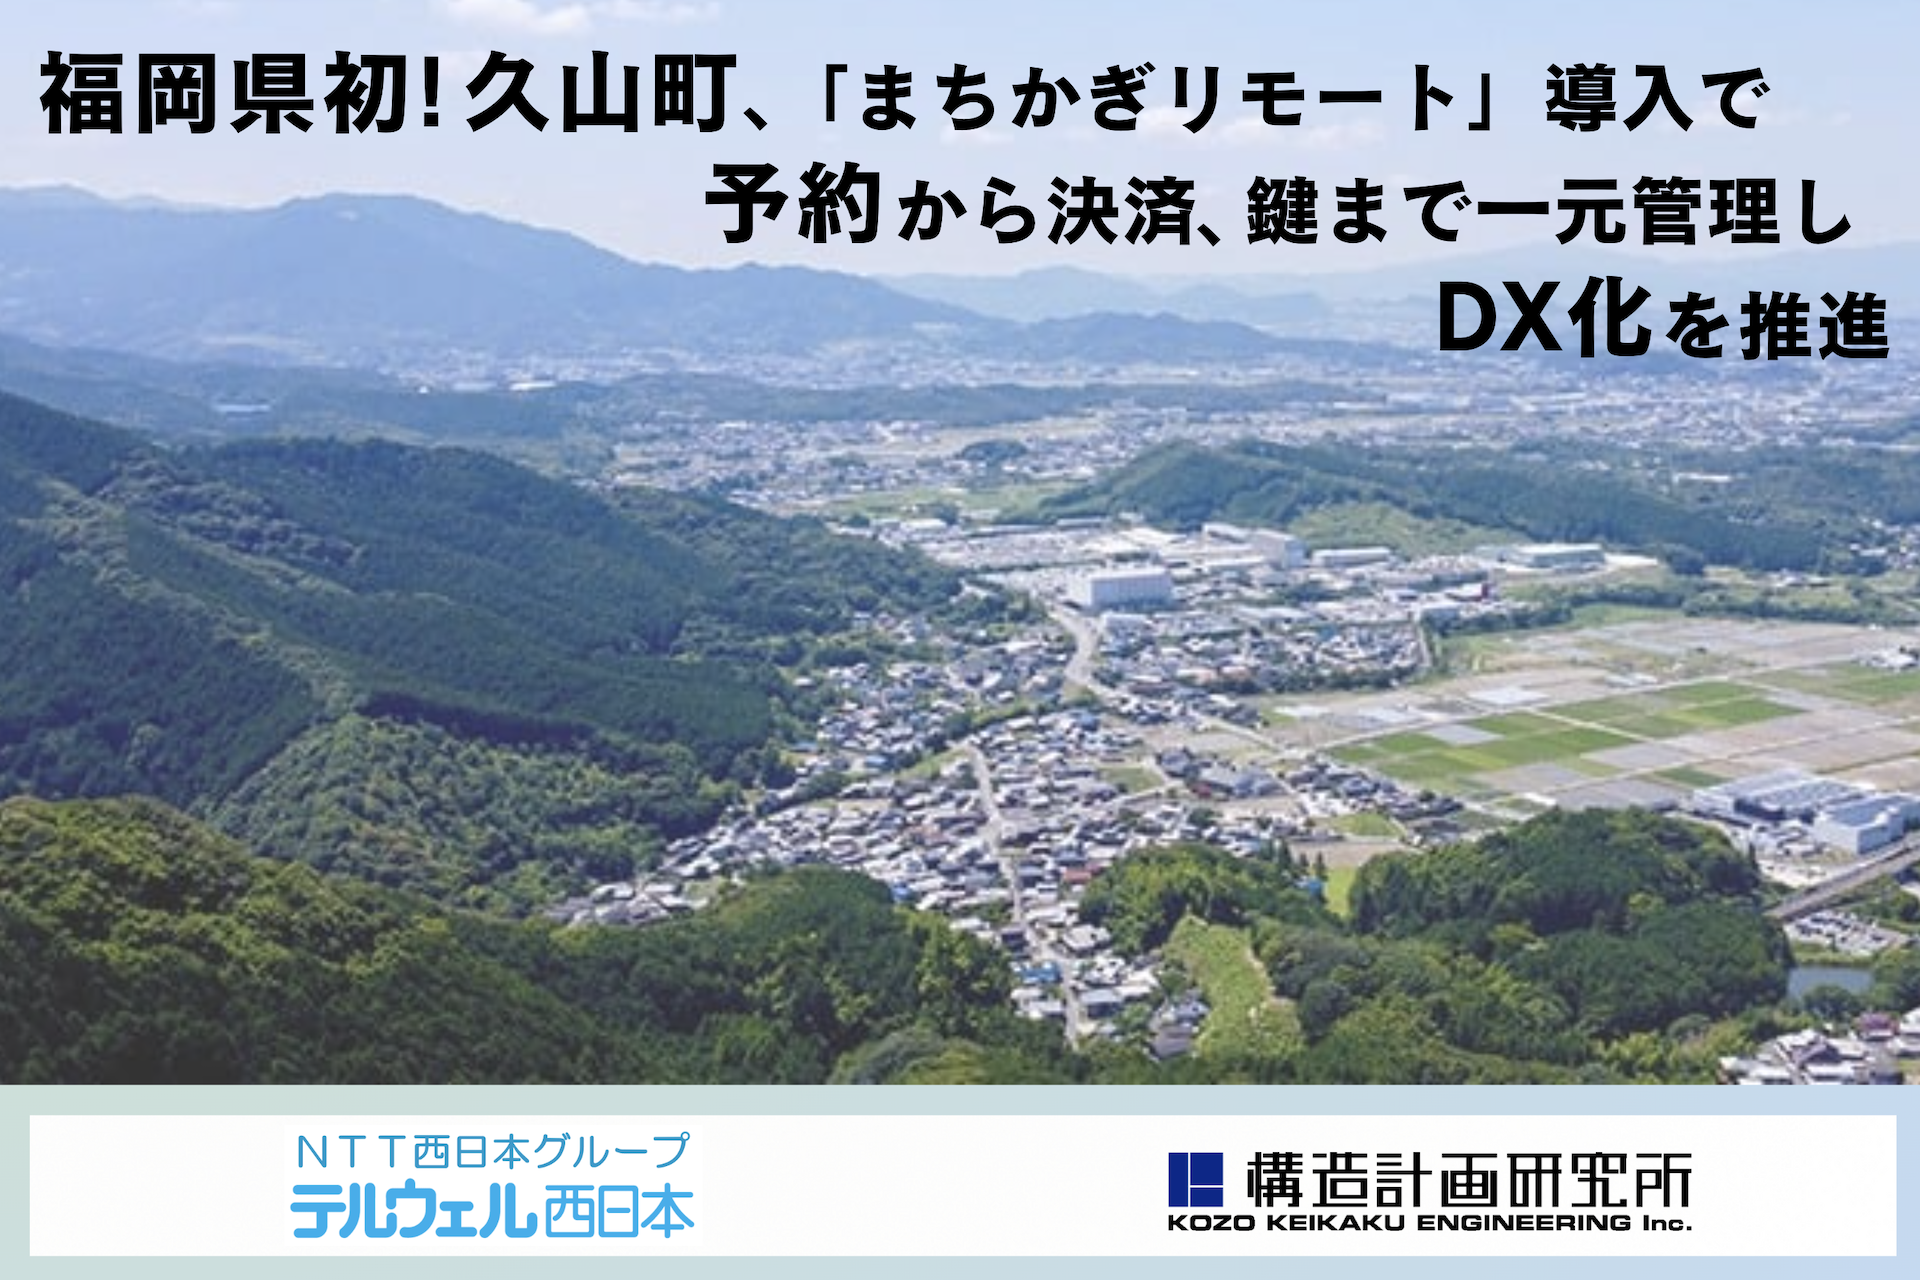 福岡県久山町、公共施設予約システム導入でDX化を推進[ニュース]